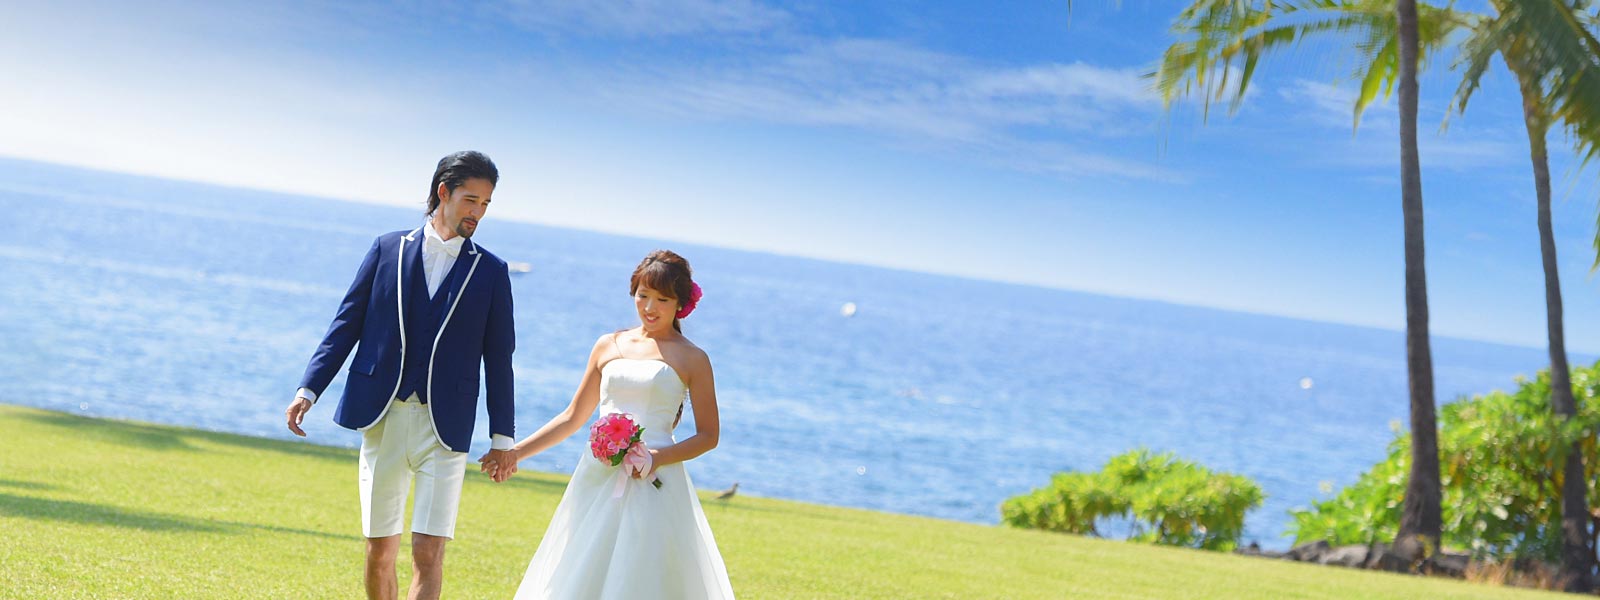 ハワイ島人気の結婚式 挙式プラン Best3 神秘の島ハワイ島で叶う 至高のハワイアイランドウェディング